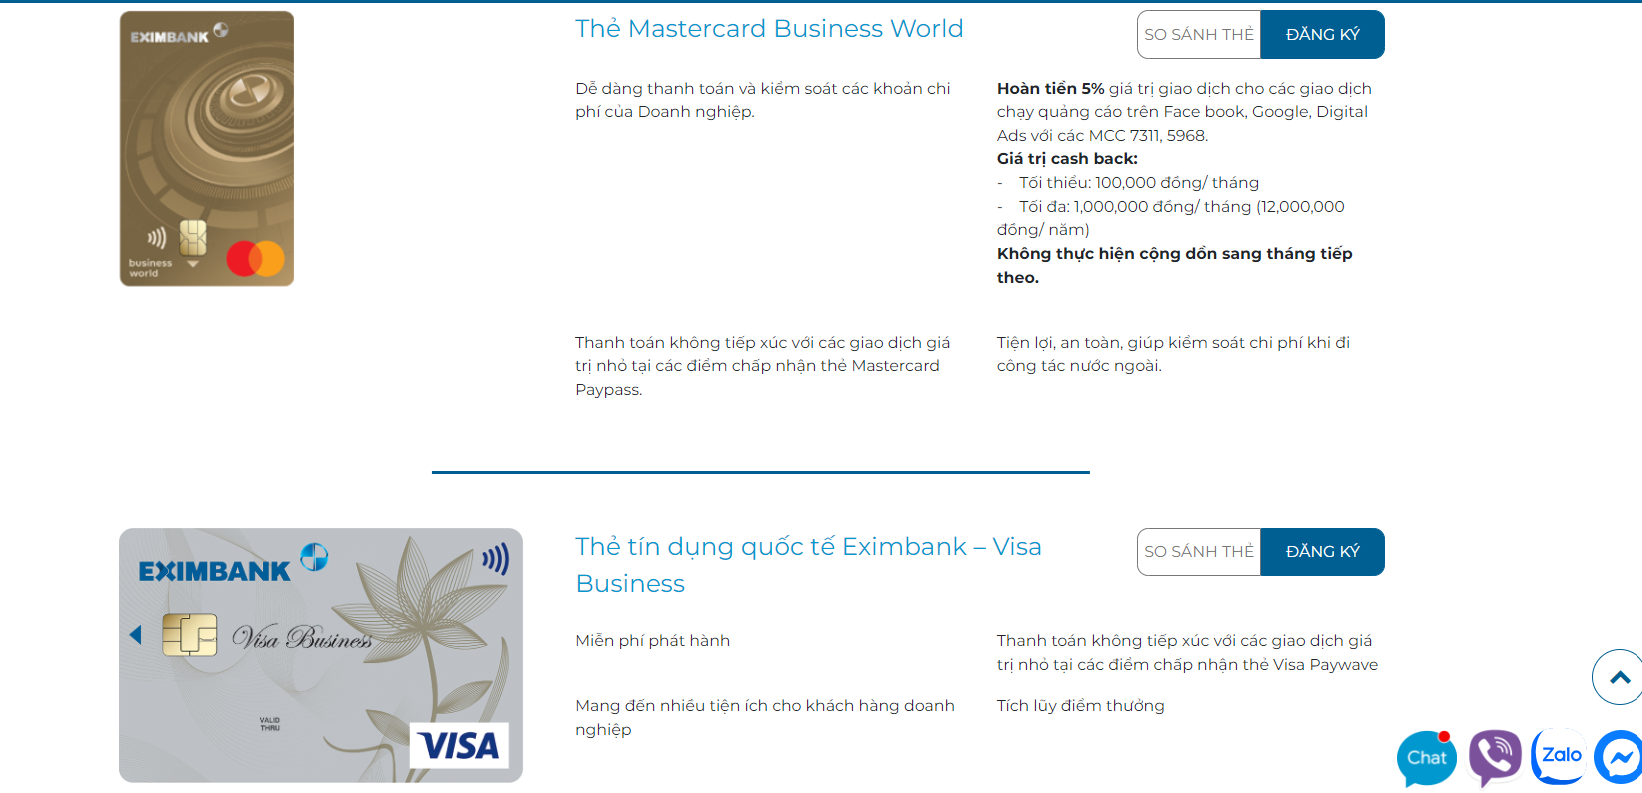 Eximbank hiện đang cung cấp những loại thẻ tín dụng nào?